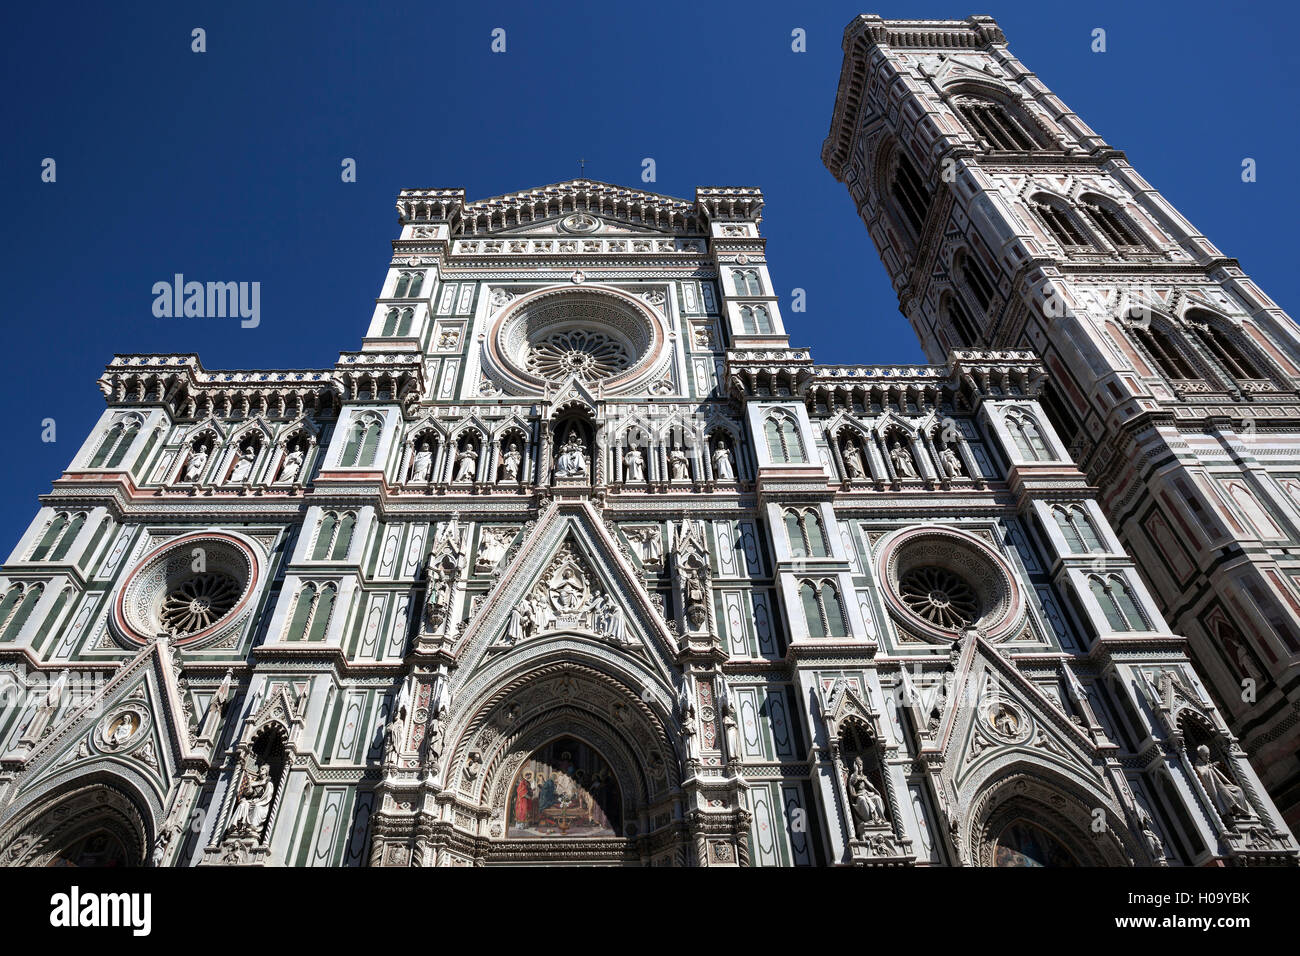 La Catedral de Santa Maria del Fiore, el west side, con el campanario, el Campanile di Giotto, Florencia, Toscana, Italia Foto de stock